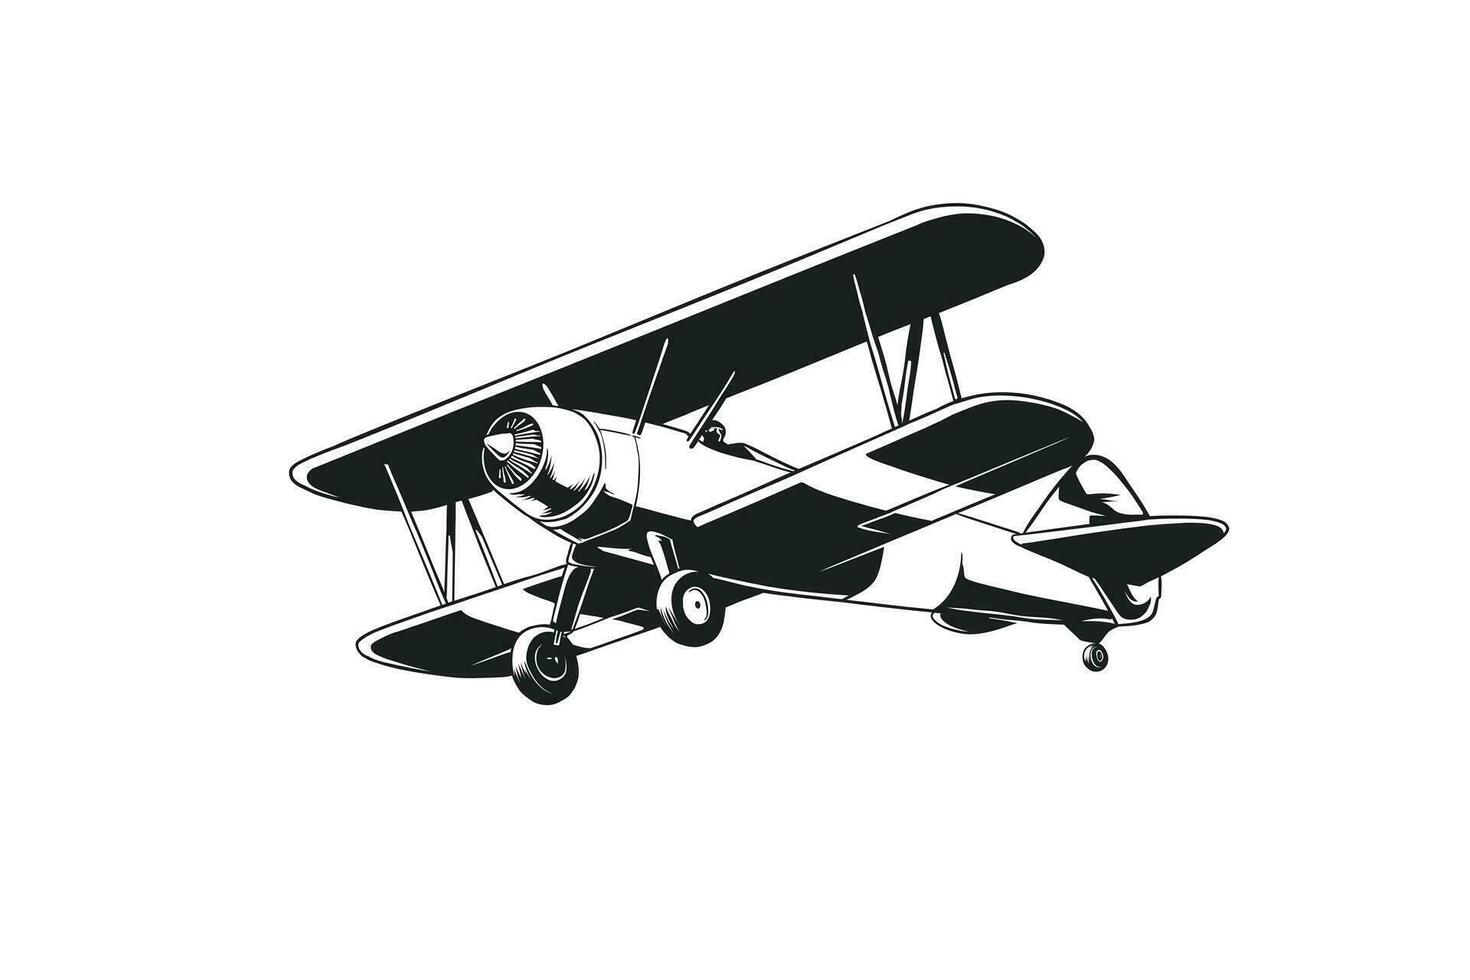 zwart en wit vliegtuig illustratie in retro stijl vector